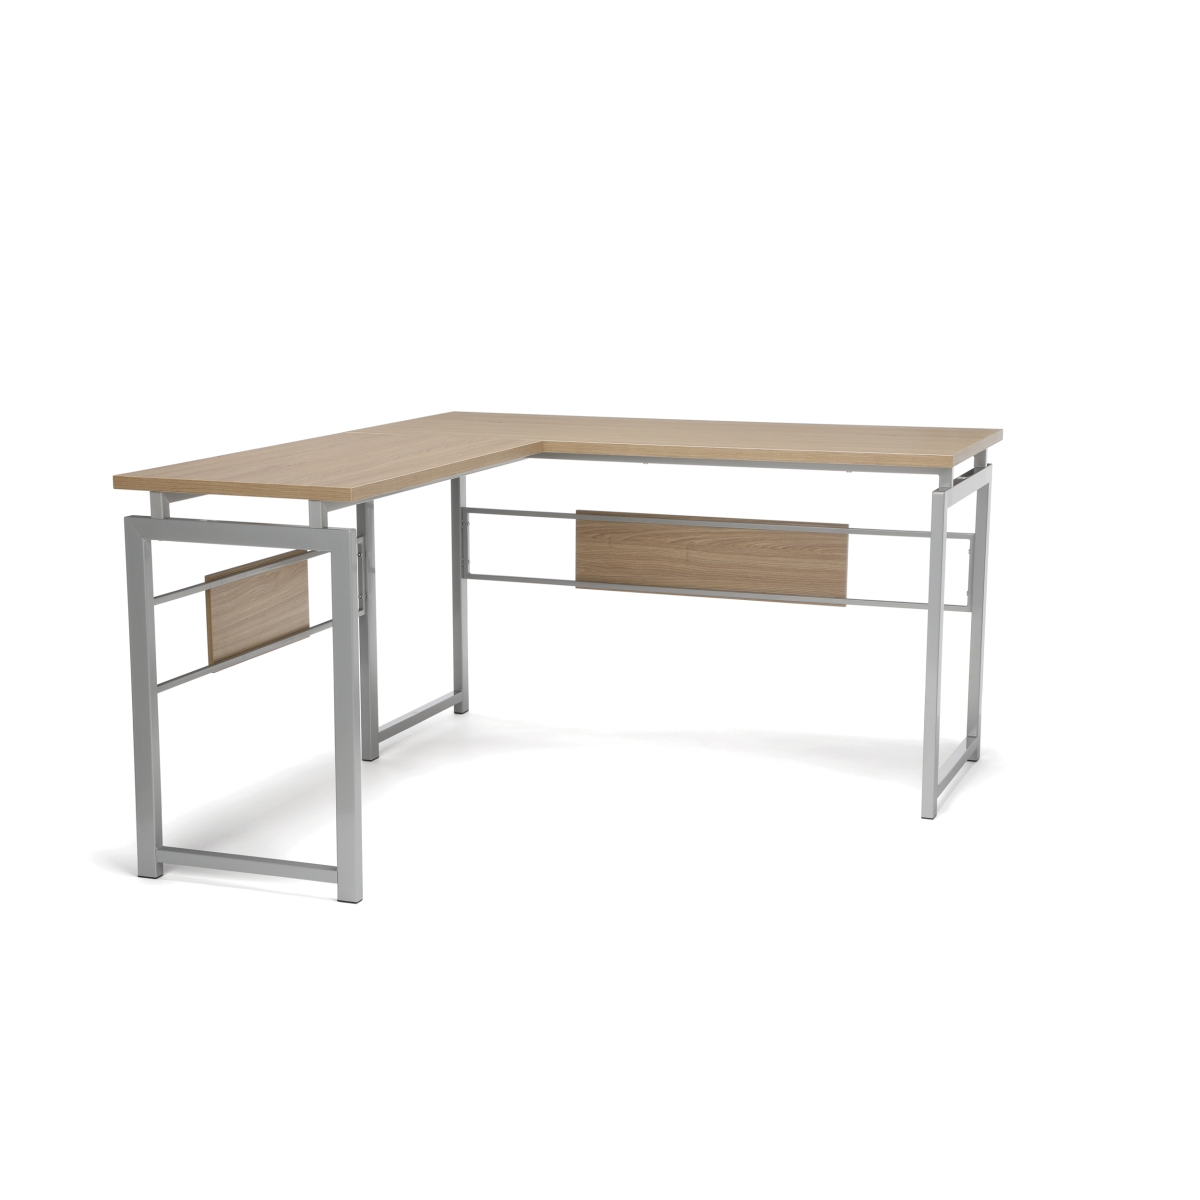 Ess-1020-slv-hvt L Desk With Metal Legs, Harvest With Silver Frame